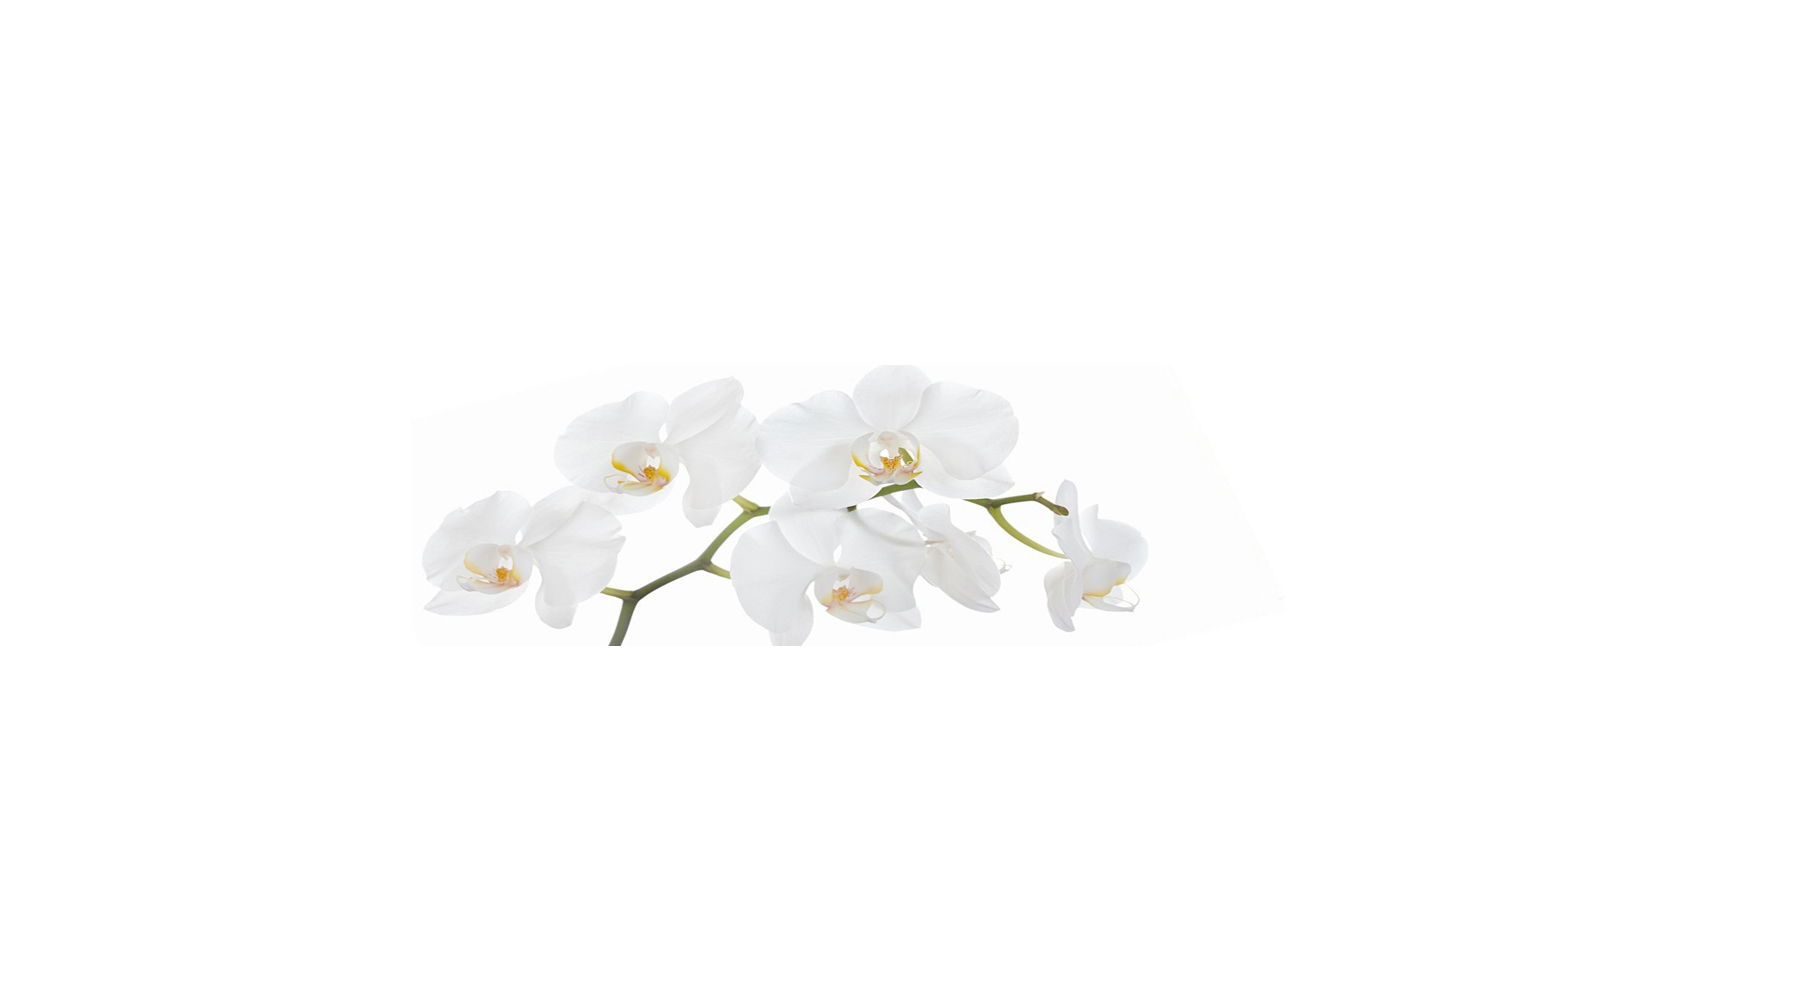 91097390 Стеновая панель Небольшая белая орхидея 200x60x0.2 см поликарбонат цвет разноцветный STLM-0482896 СТУДИЯ ФАРТУКОВ